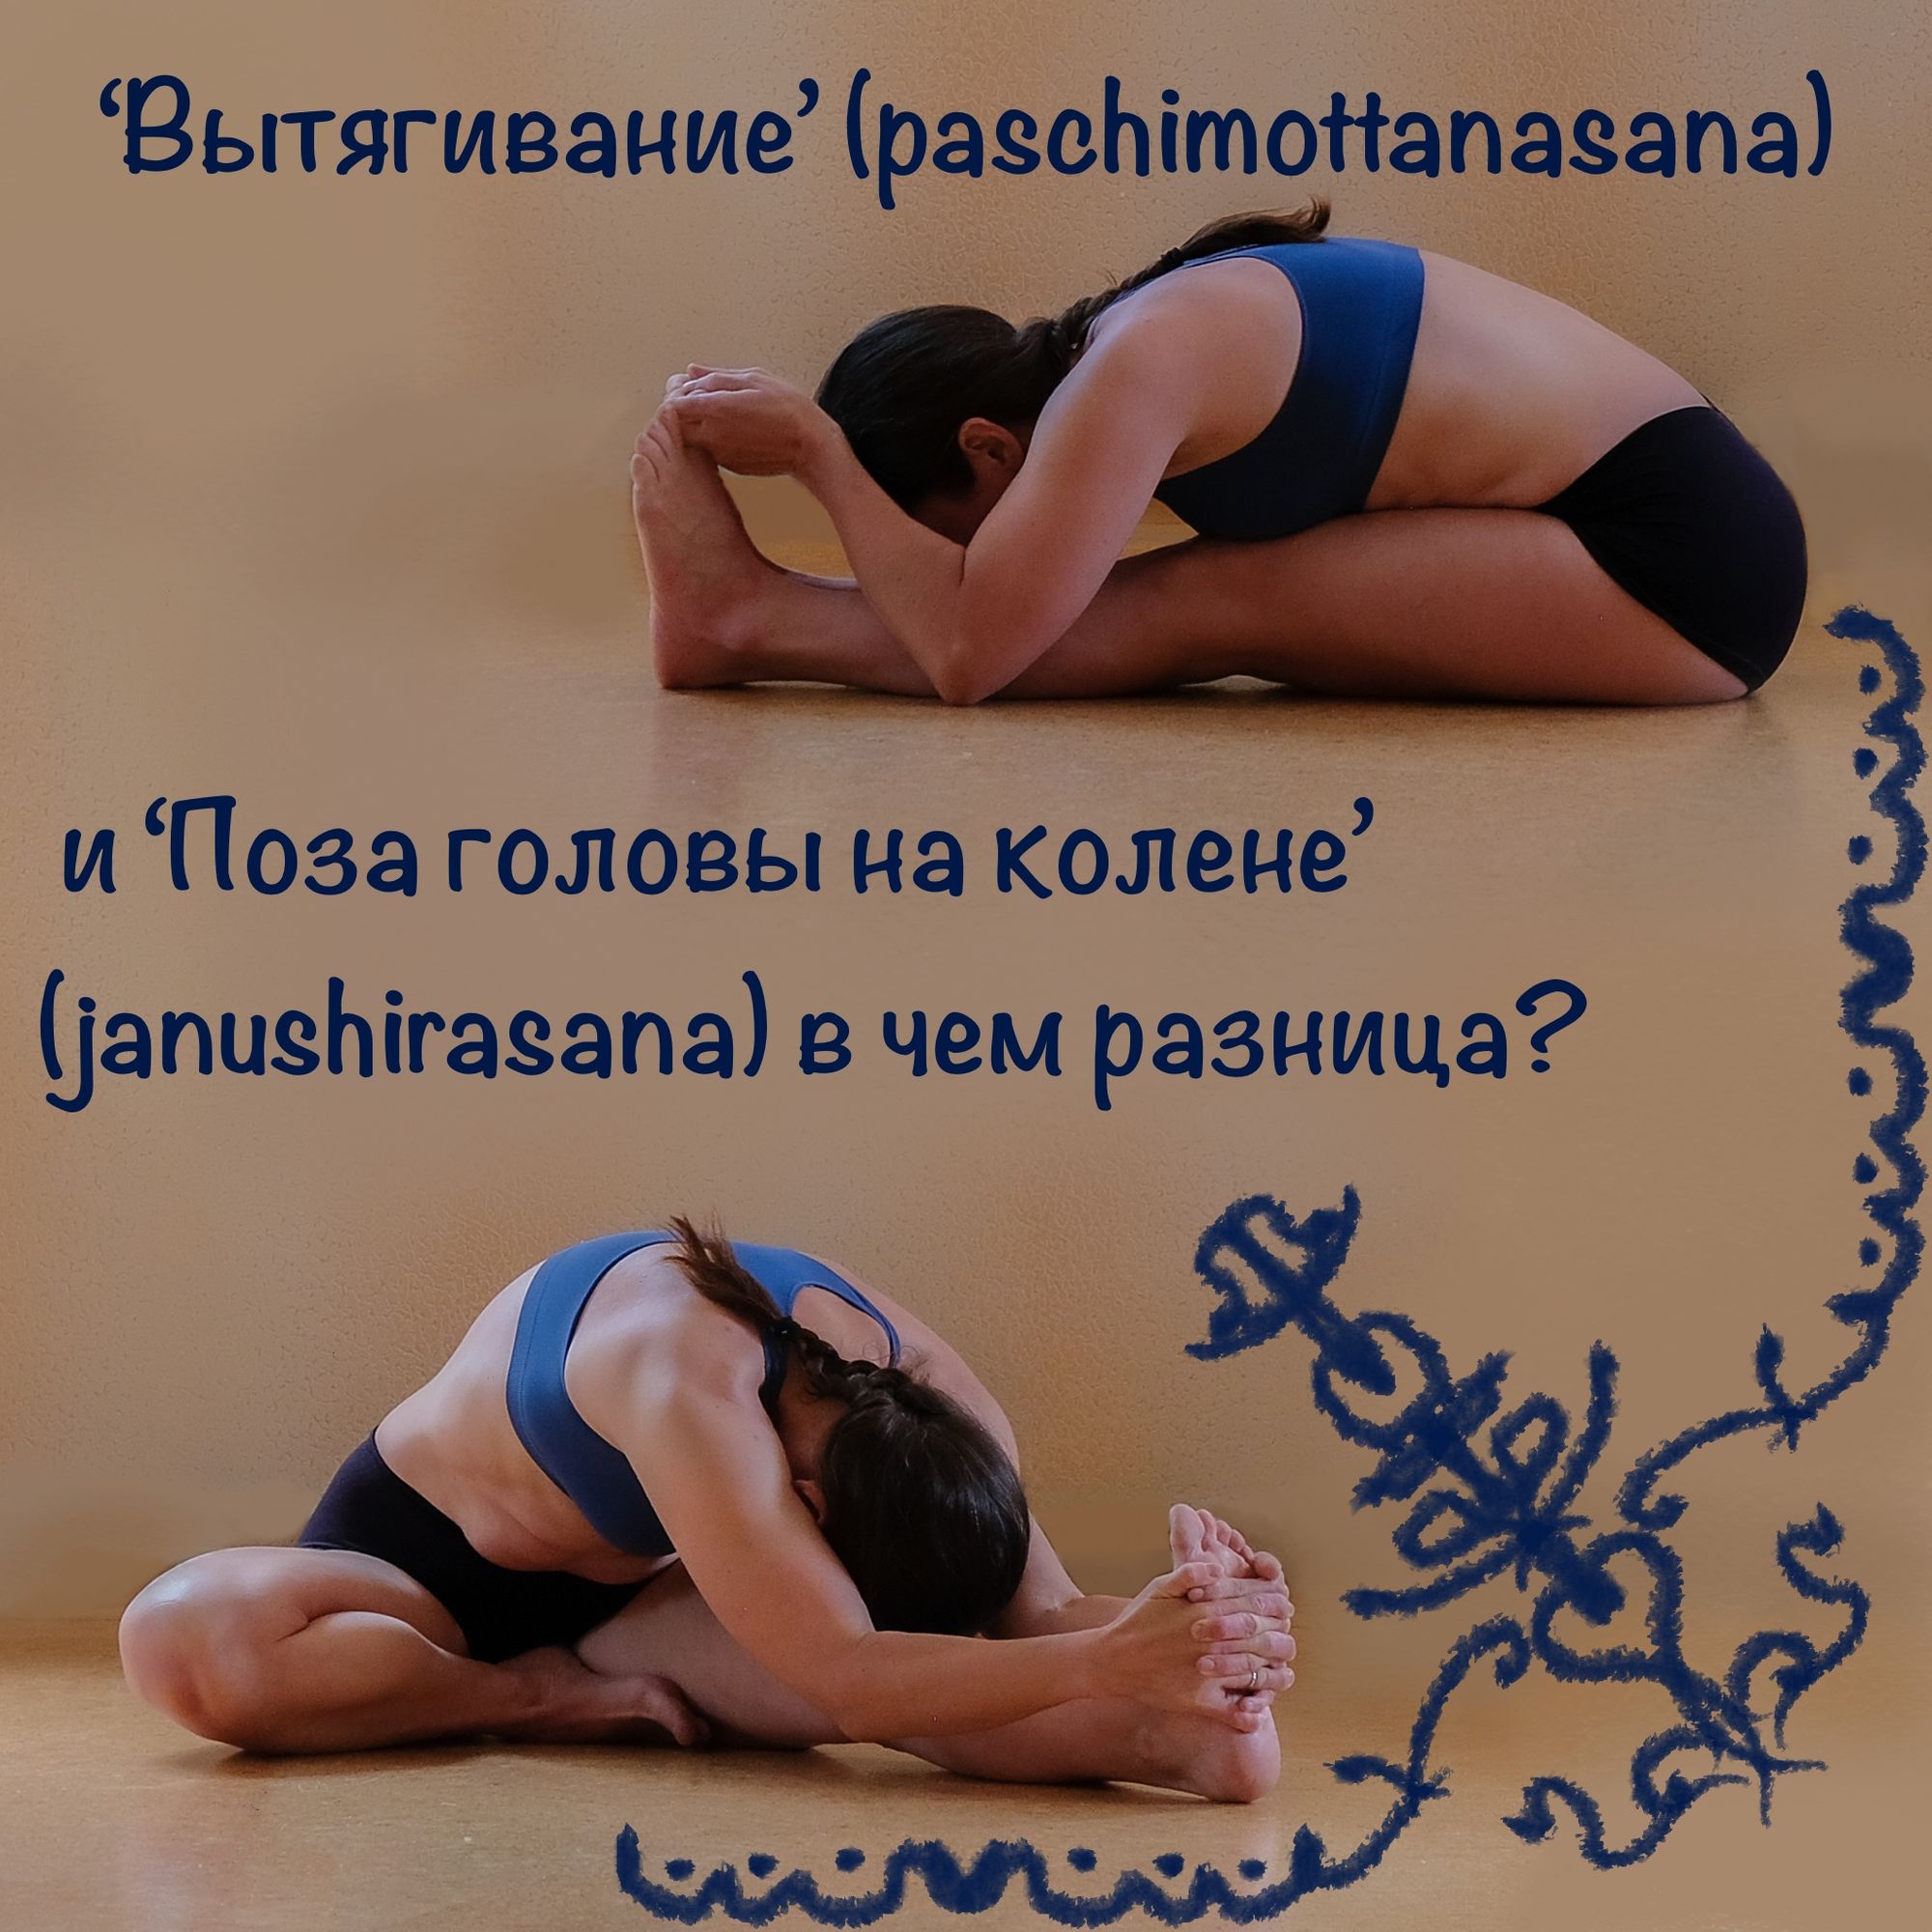 ‘Вытягивание’ (Paschimottanasana) и ‘Поза головы на колене’ (Janushirasana) в чем разница?